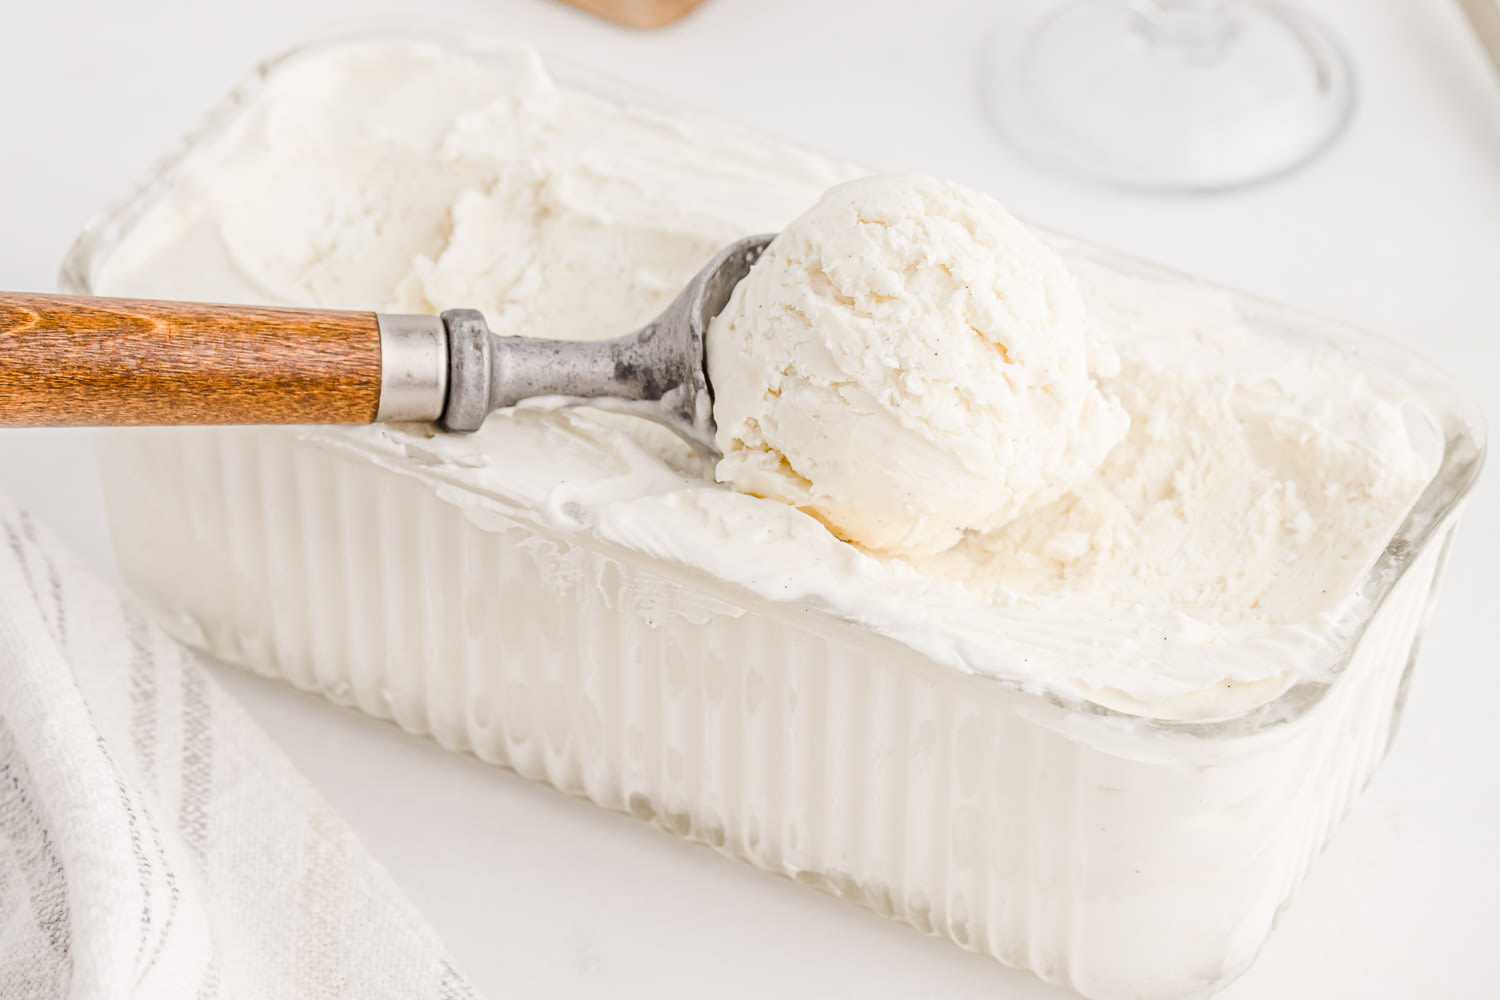 16 Tasty Tips For Making Homemade Ice Cream